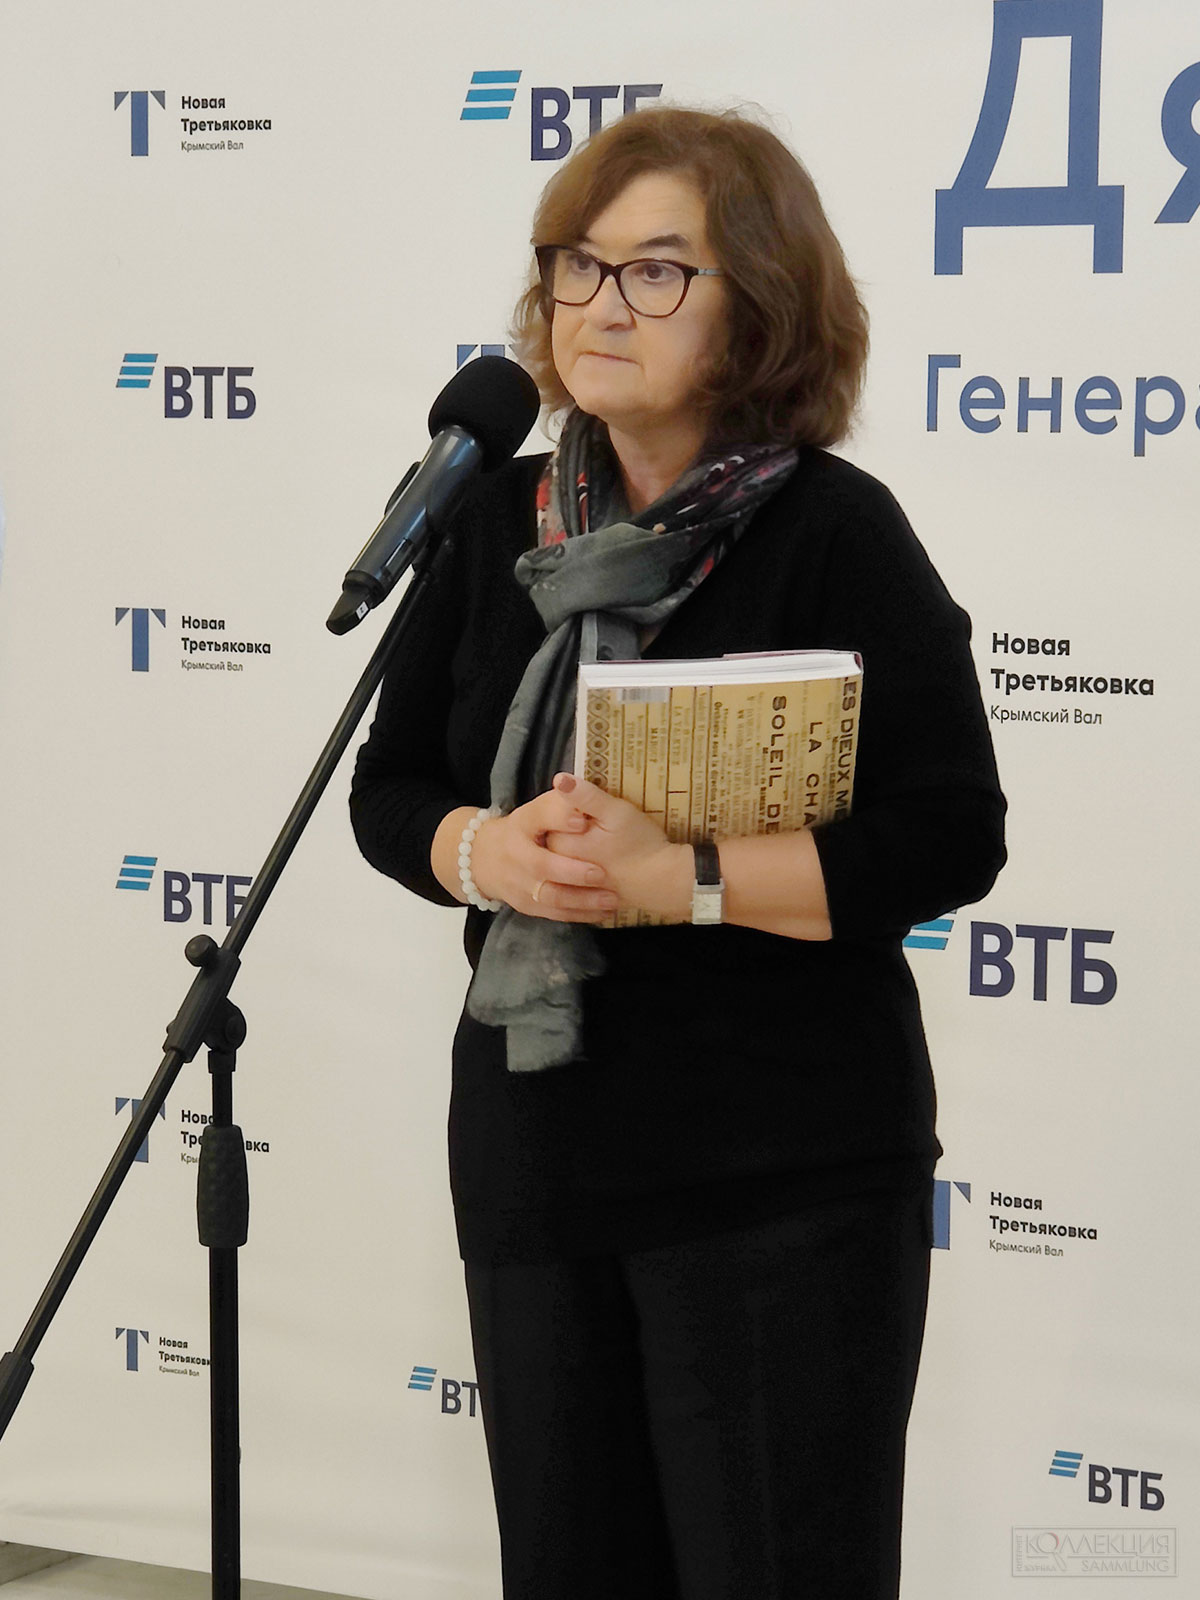 Зельфира Исмаиловна Трегулова, директор Государственной Третьяковской галереи